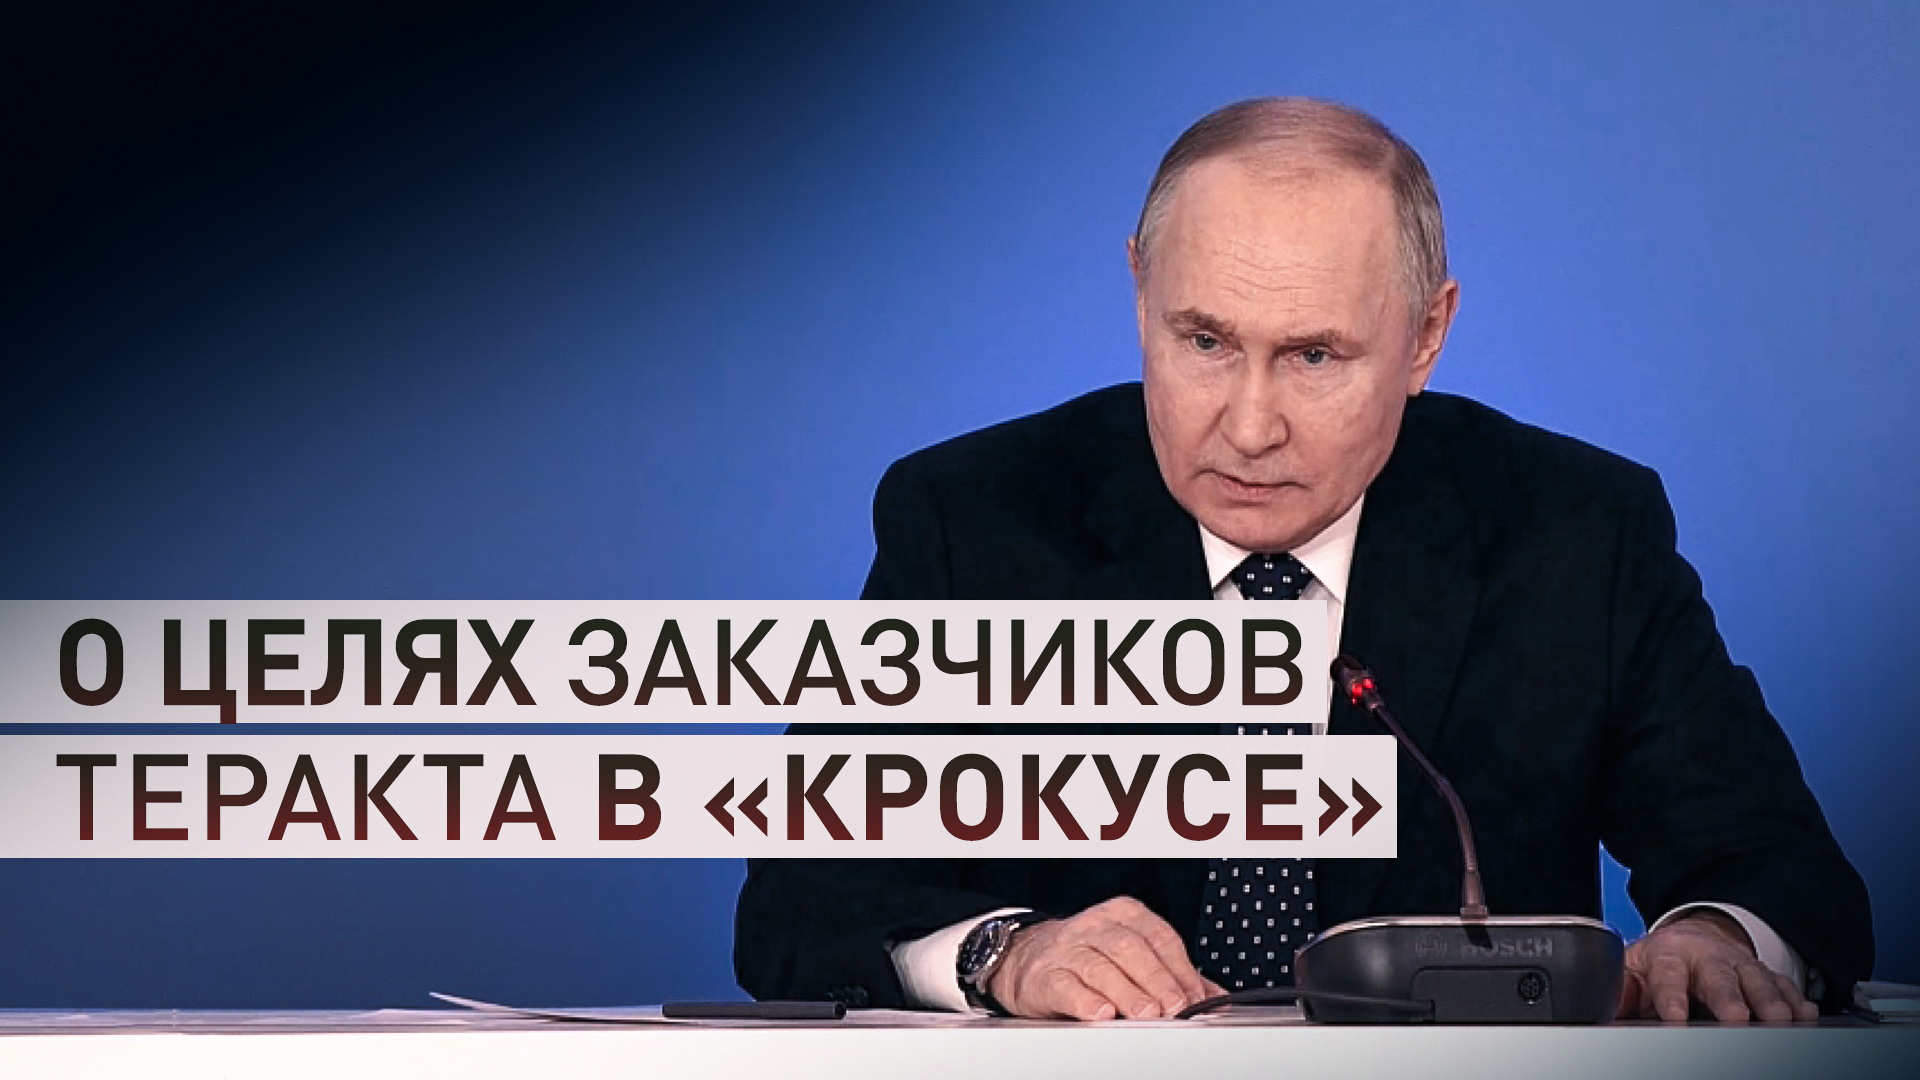 «Нанесение ущерба единству России»: Путин — о целях заказчиков теракта в «Крокусе»